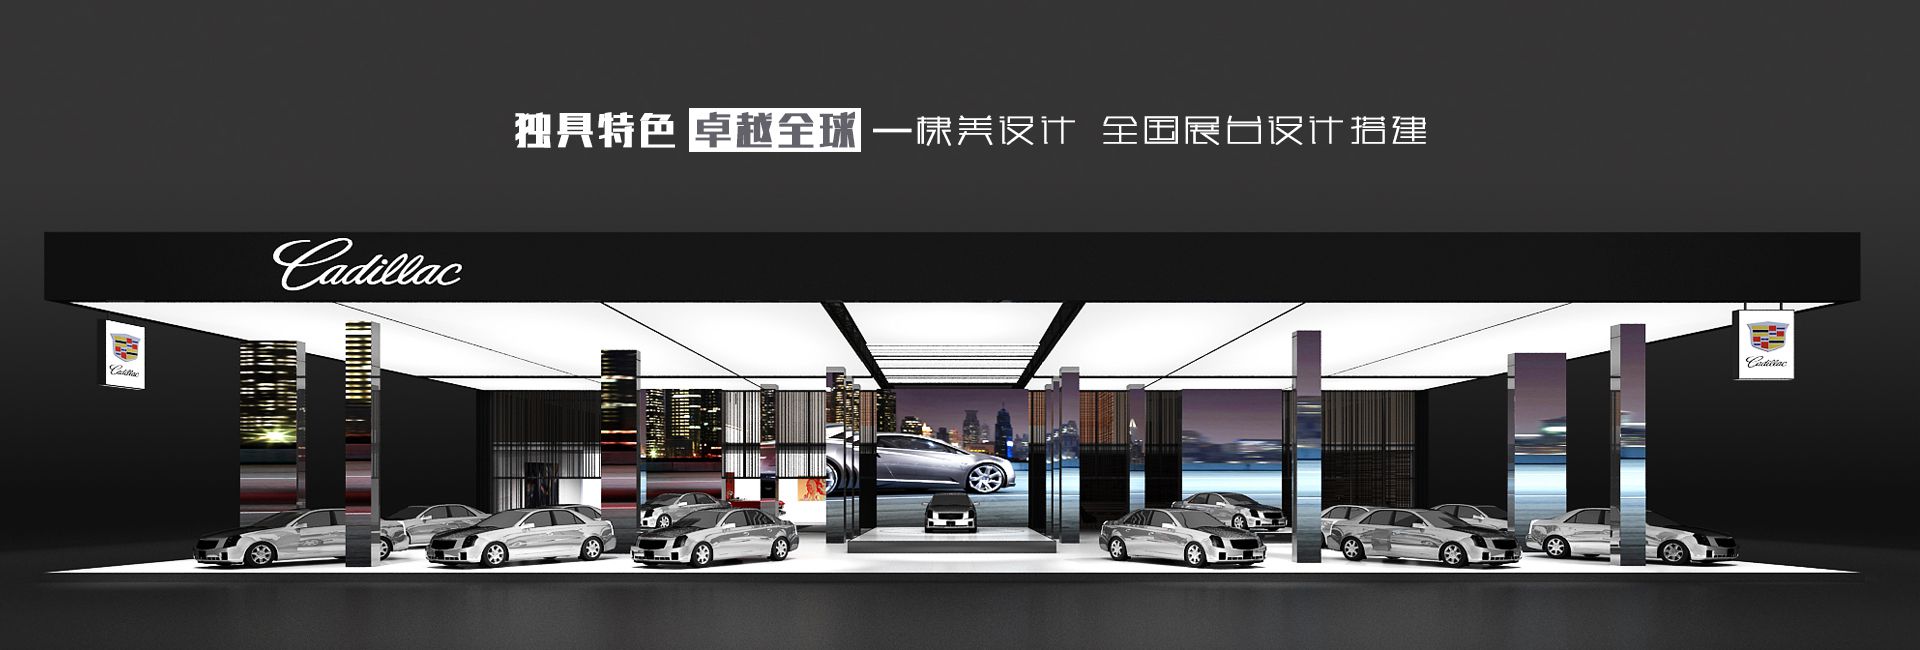 企業展廳設計裝修公司-上海展會展臺設計搭建-展館展覽展示制作